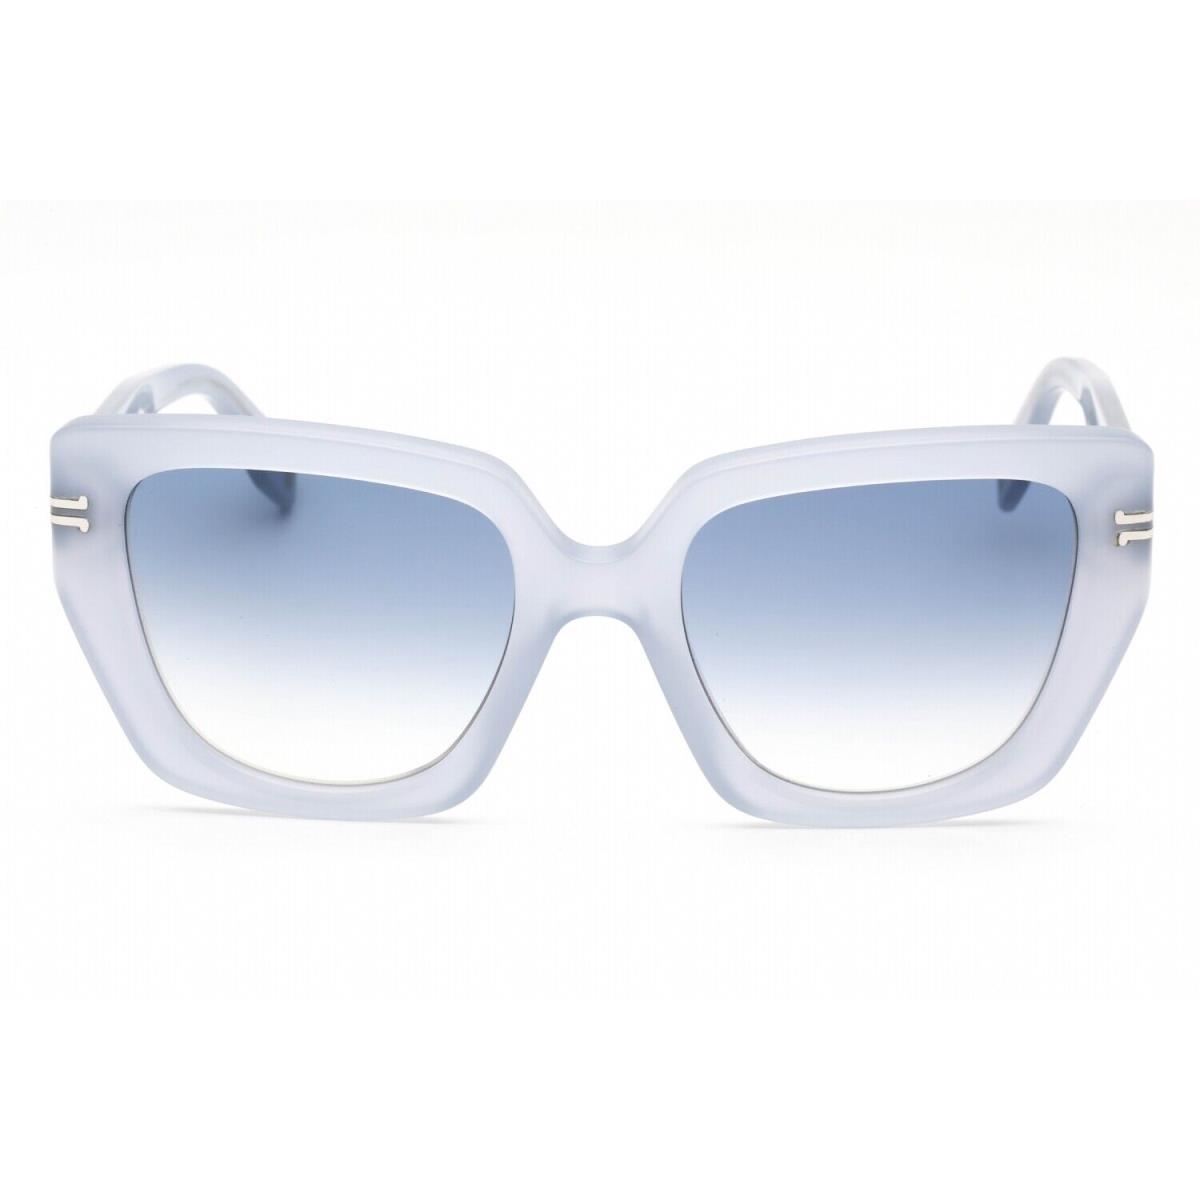 Marc Jacobs MJ 1051/S 0R3T 08 Sunglasses Azure Ruthenium Frame Blue Lenses 53mm